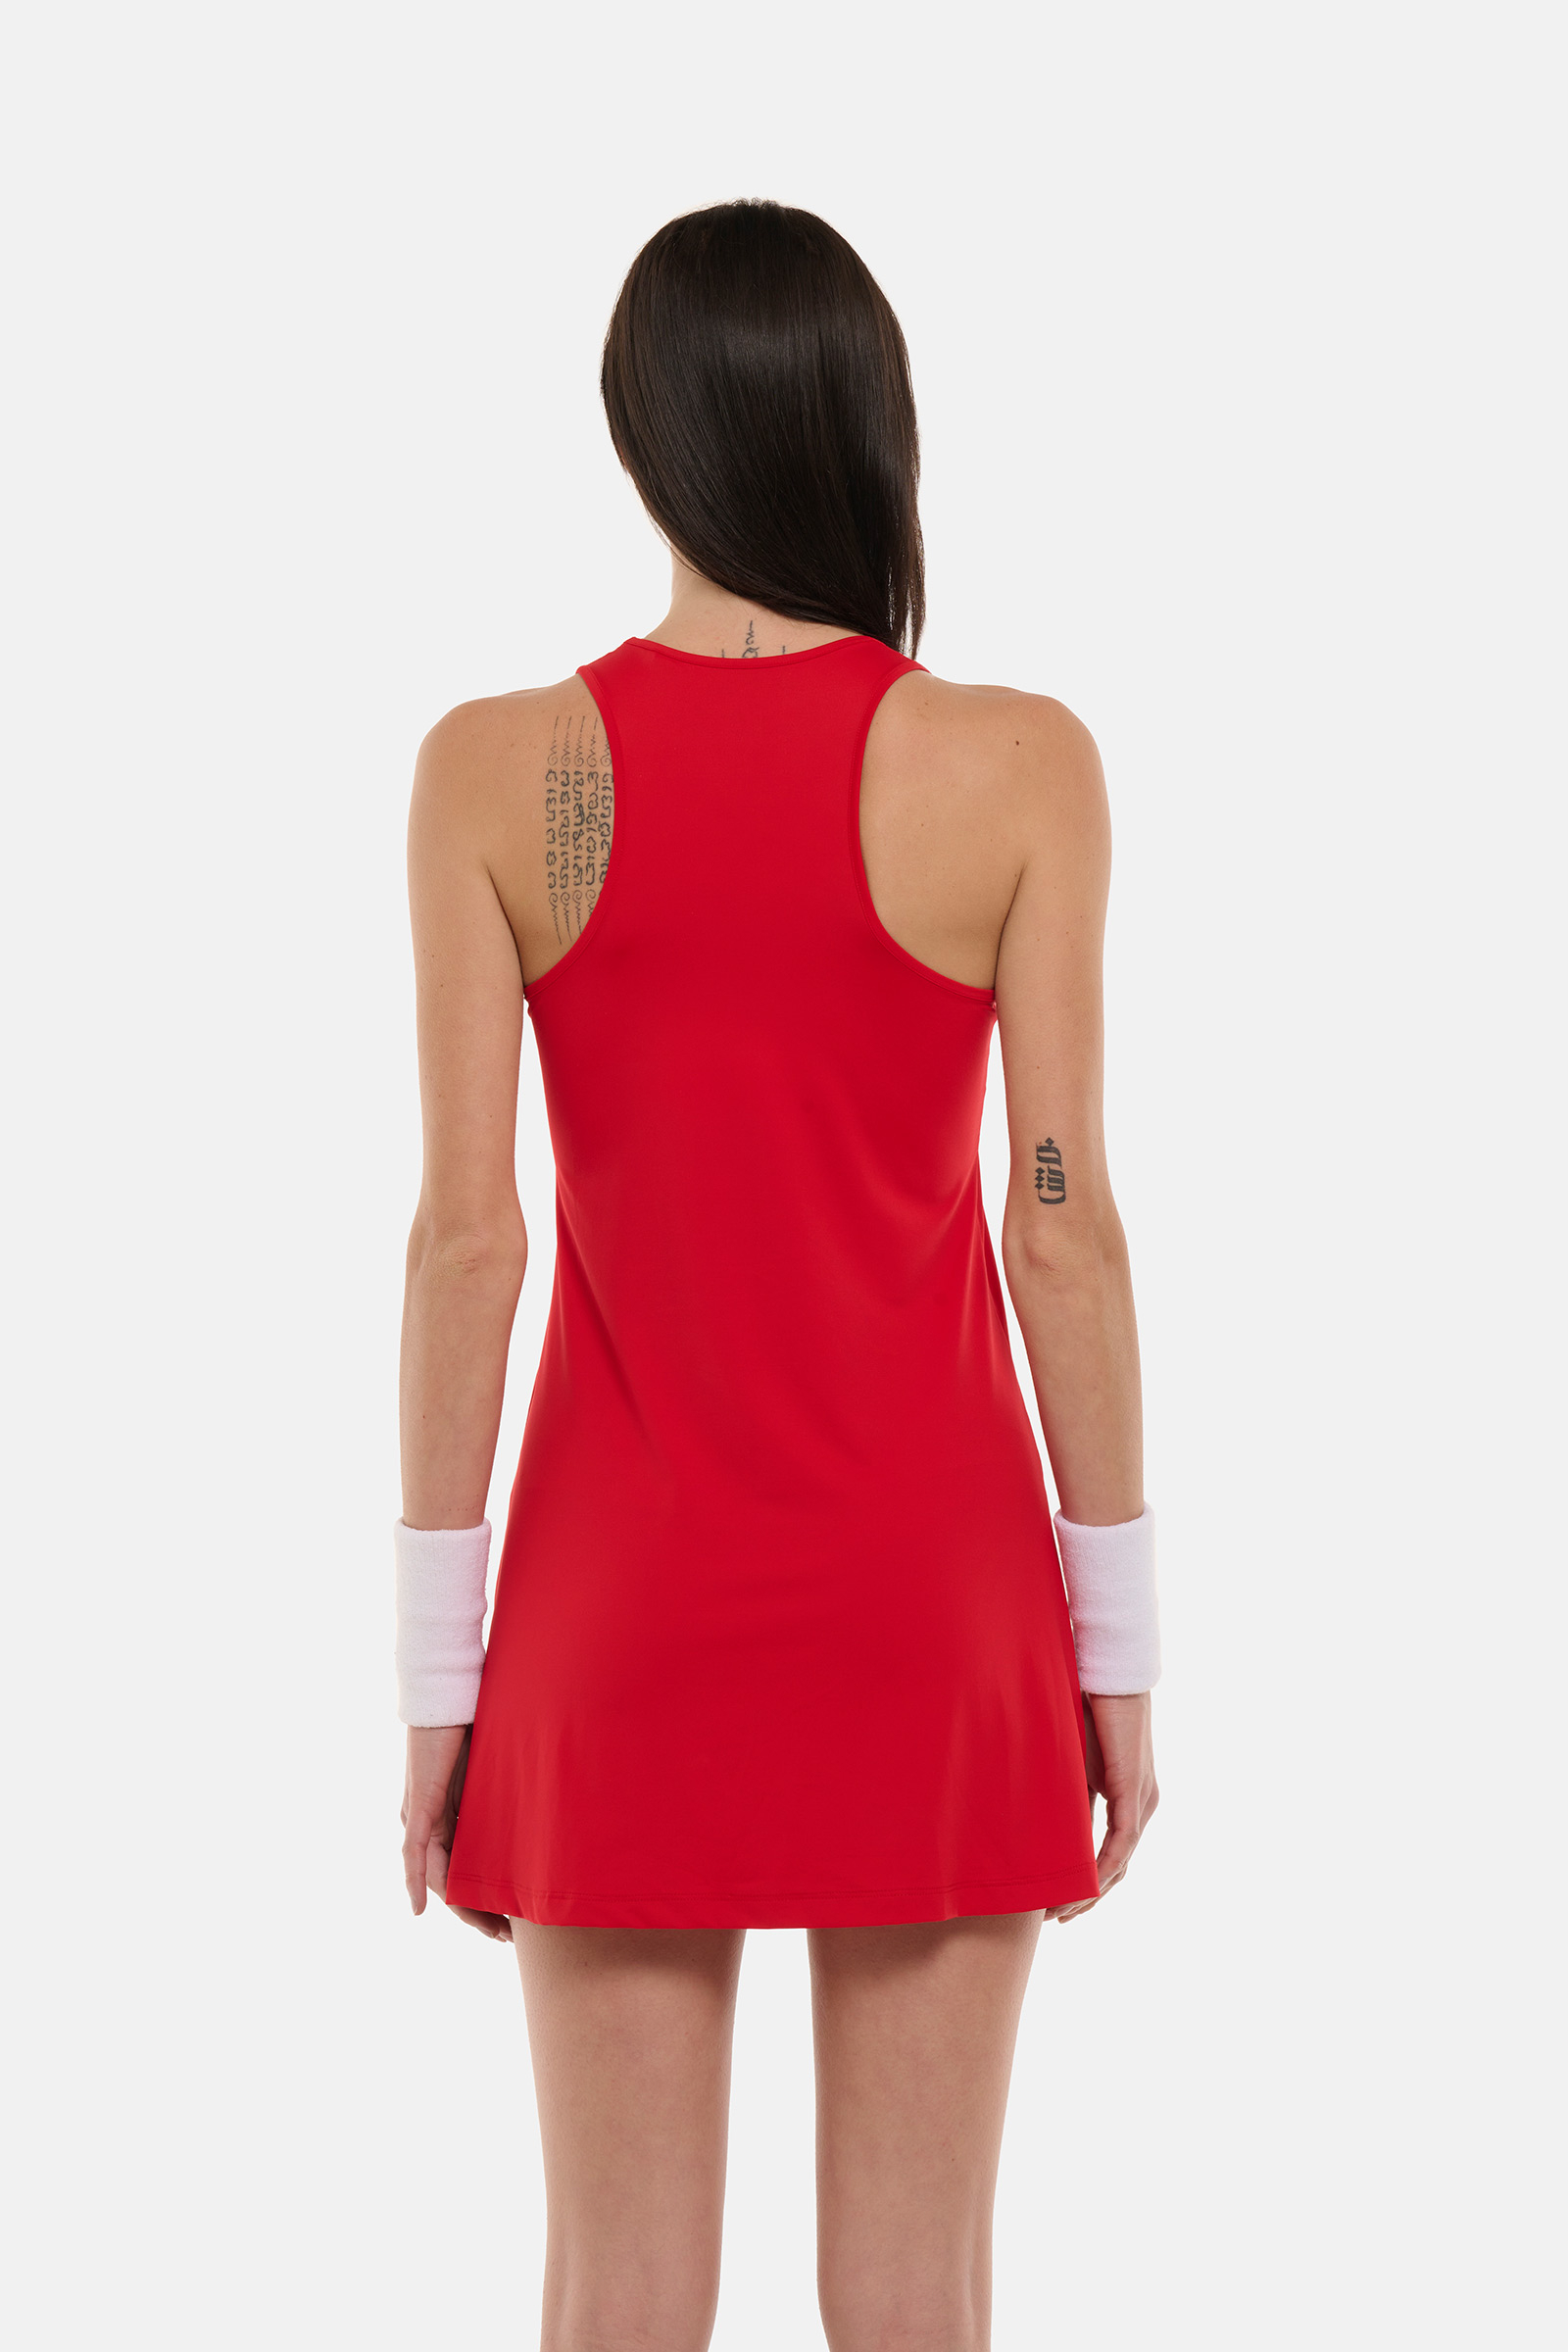 SPORT STRIPES TECH DRESS - RED,WHITE - Hydrogen - Luxury Sportwear